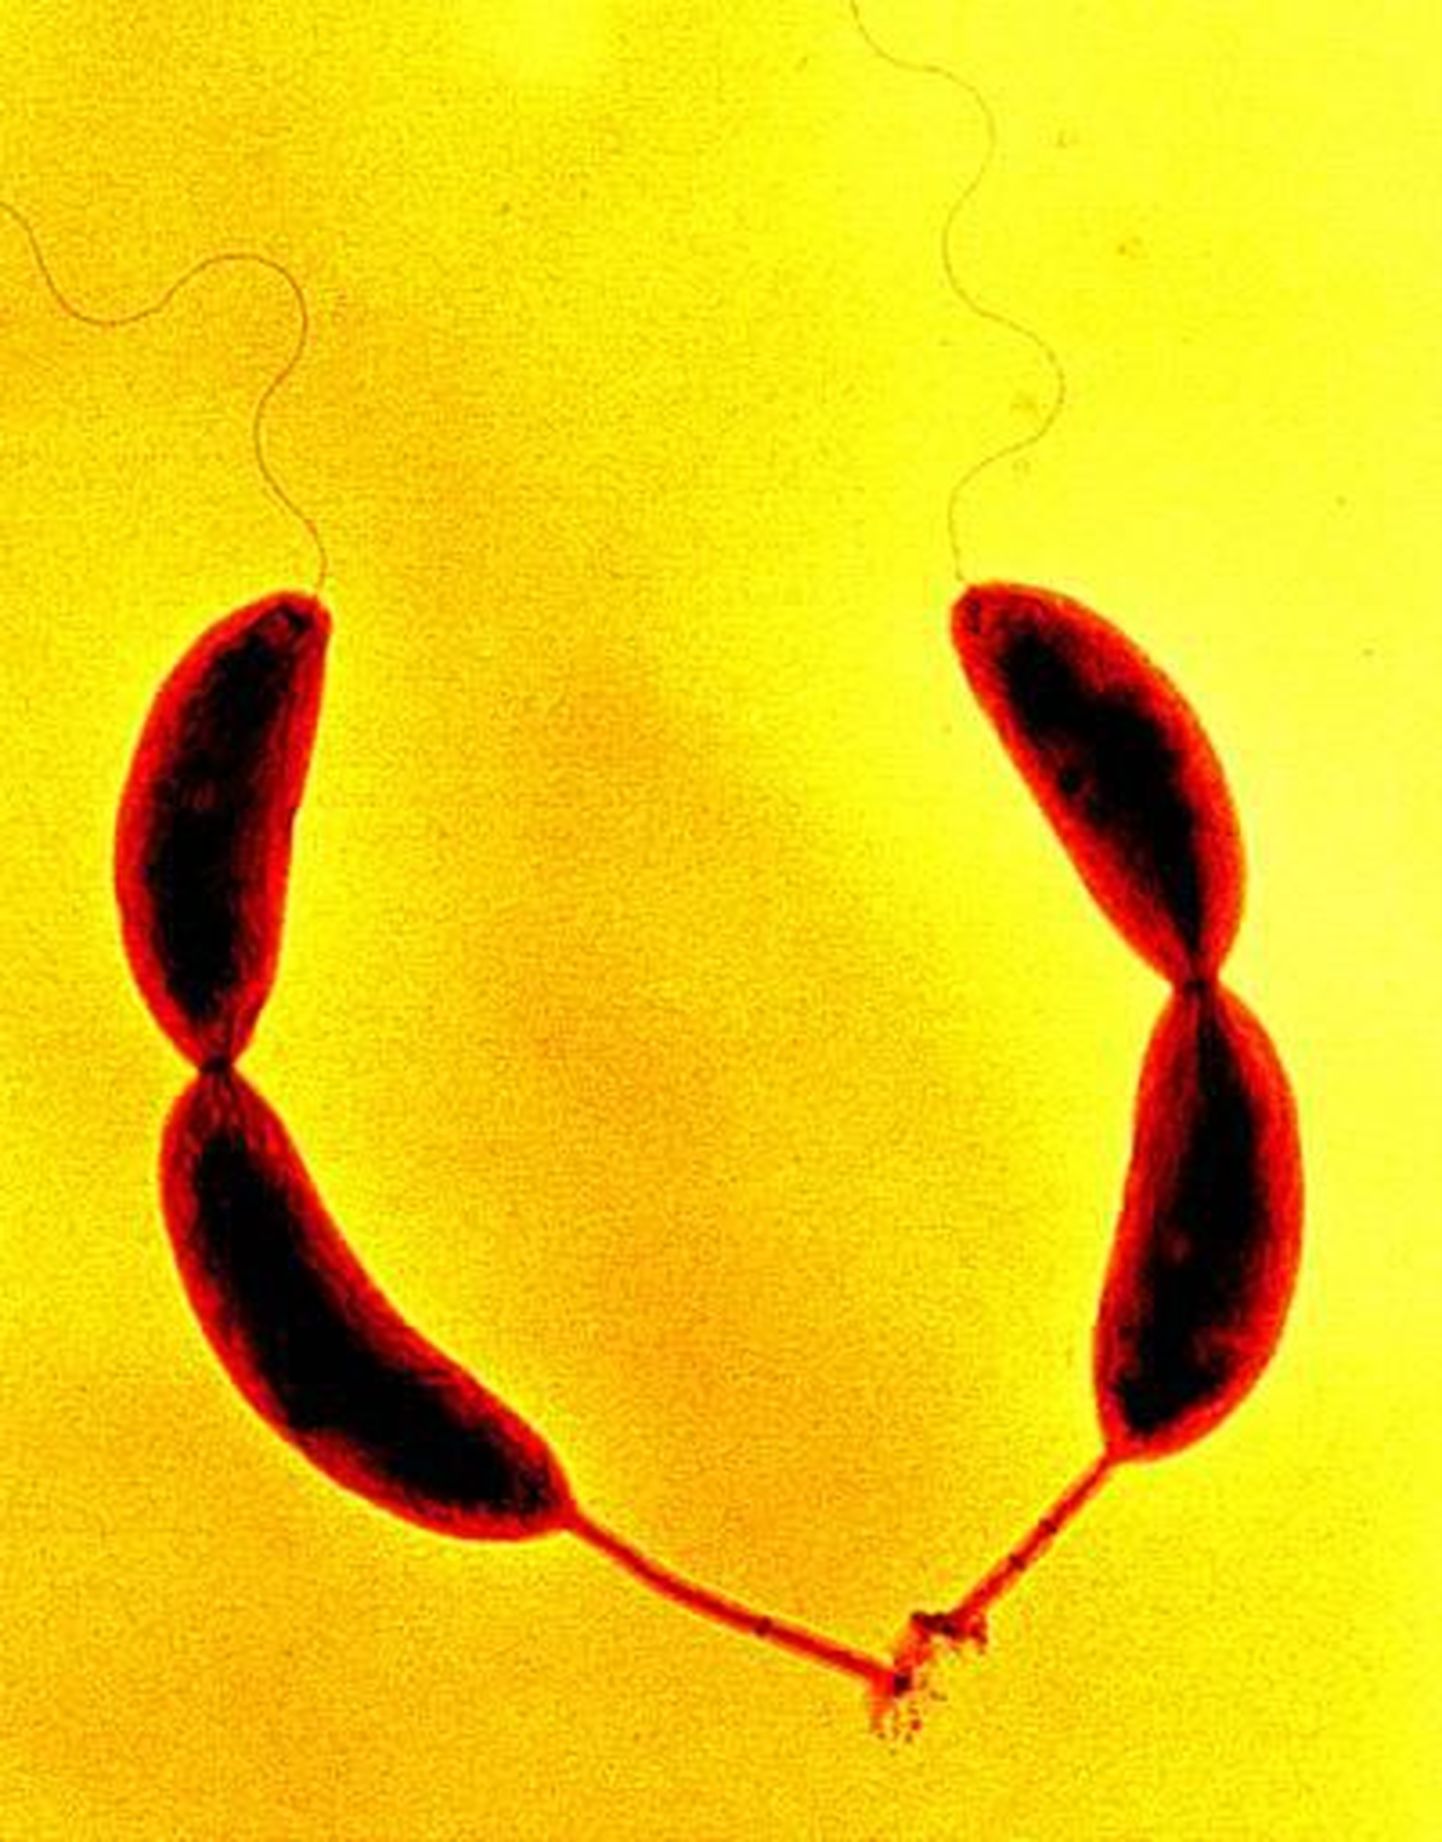 Caulobacter crescentus